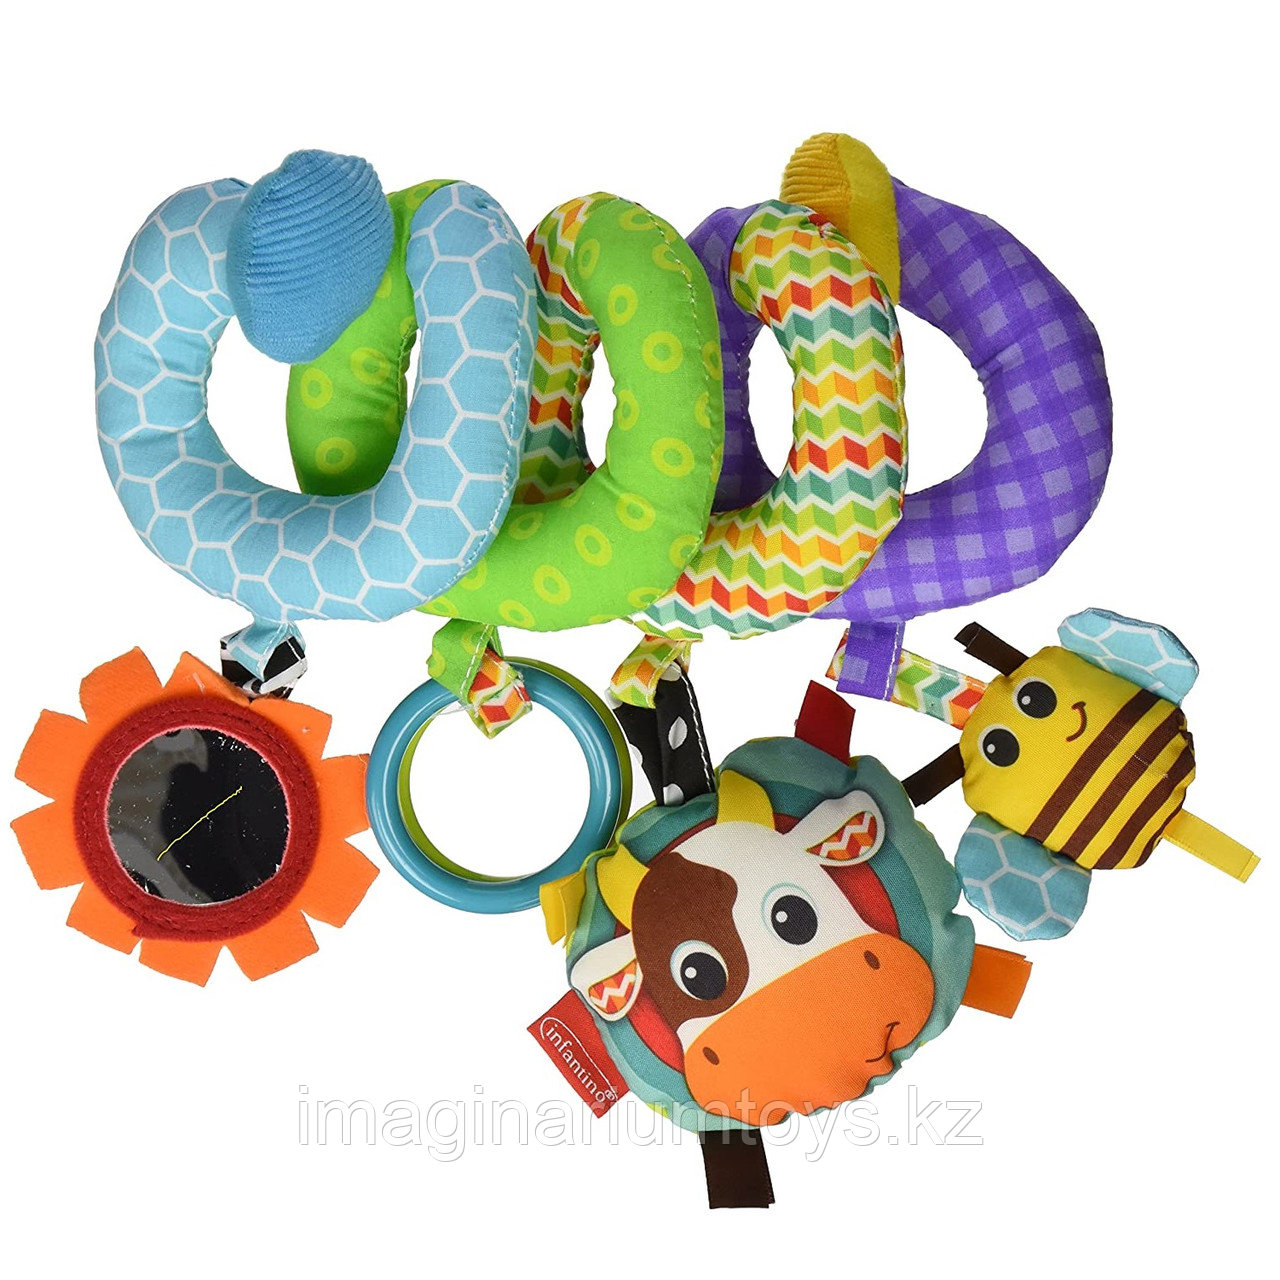 Развивающая игрушка спираль Infantino, фото 1